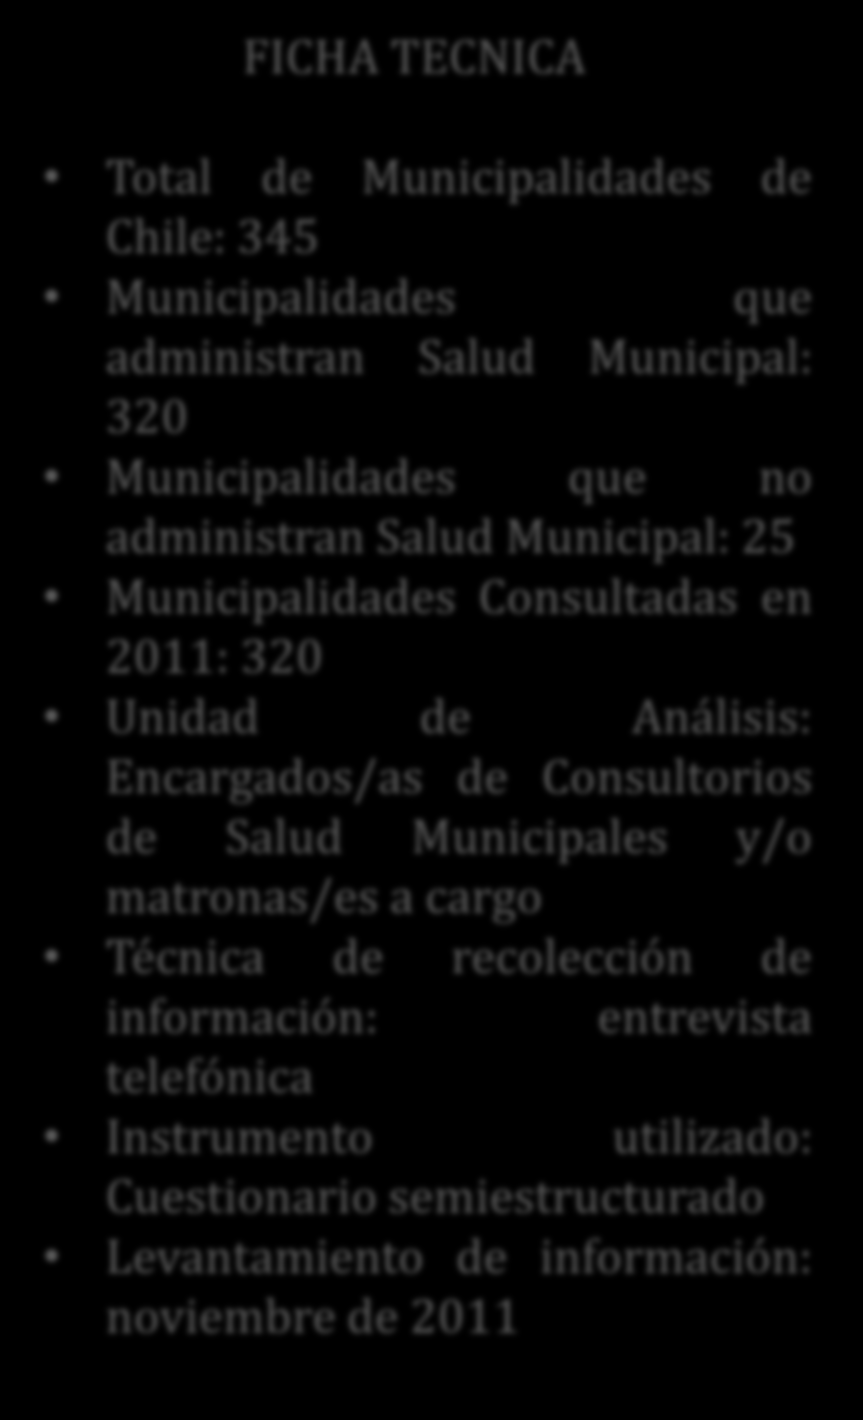 FICHA TECNICA Total de Municipalidades de Chile: 345 Municipalidades que administran Salud Municipal: 320 Municipalidades que no administran Salud Municipal: 25 Municipalidades Consultadas en 2011: